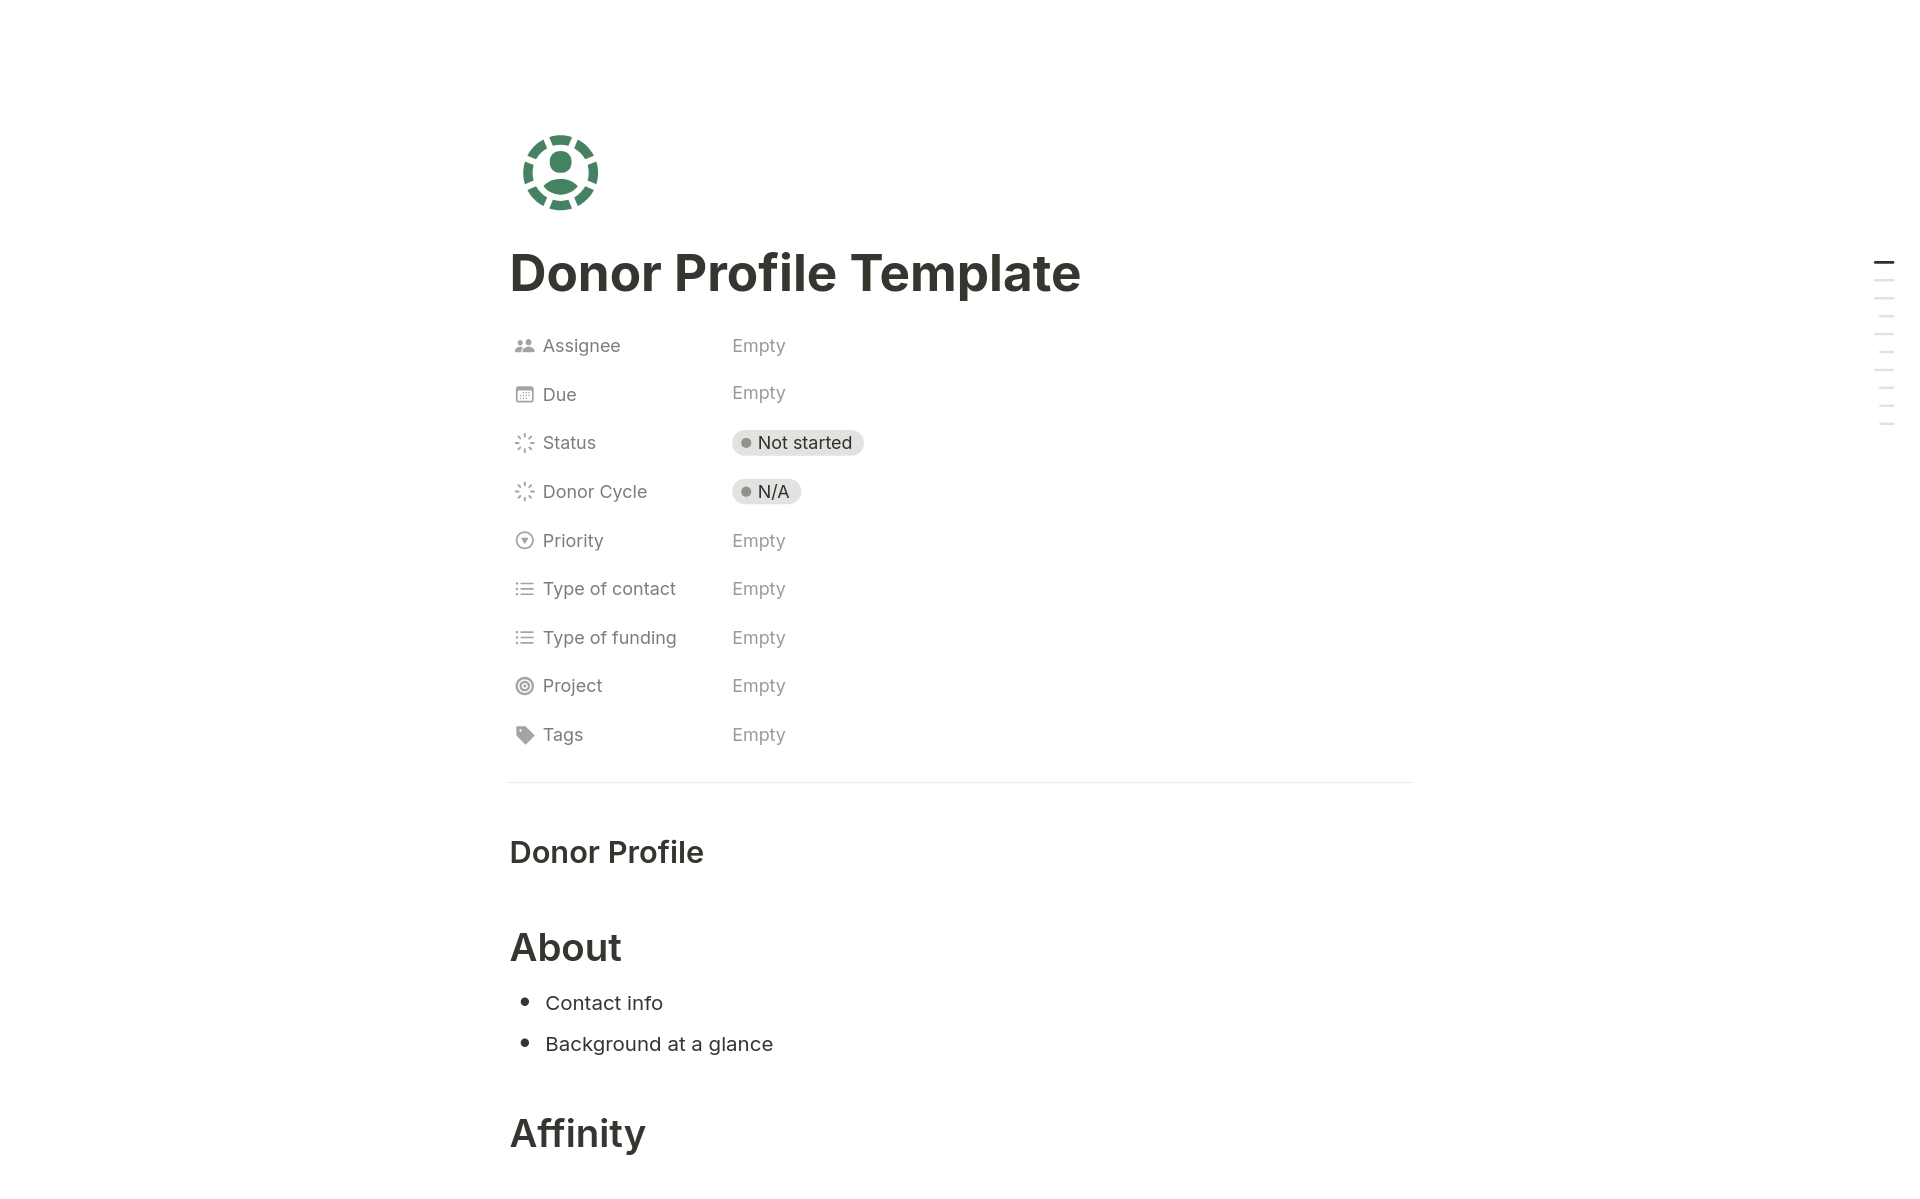 Vista previa de una plantilla para Donor Profile